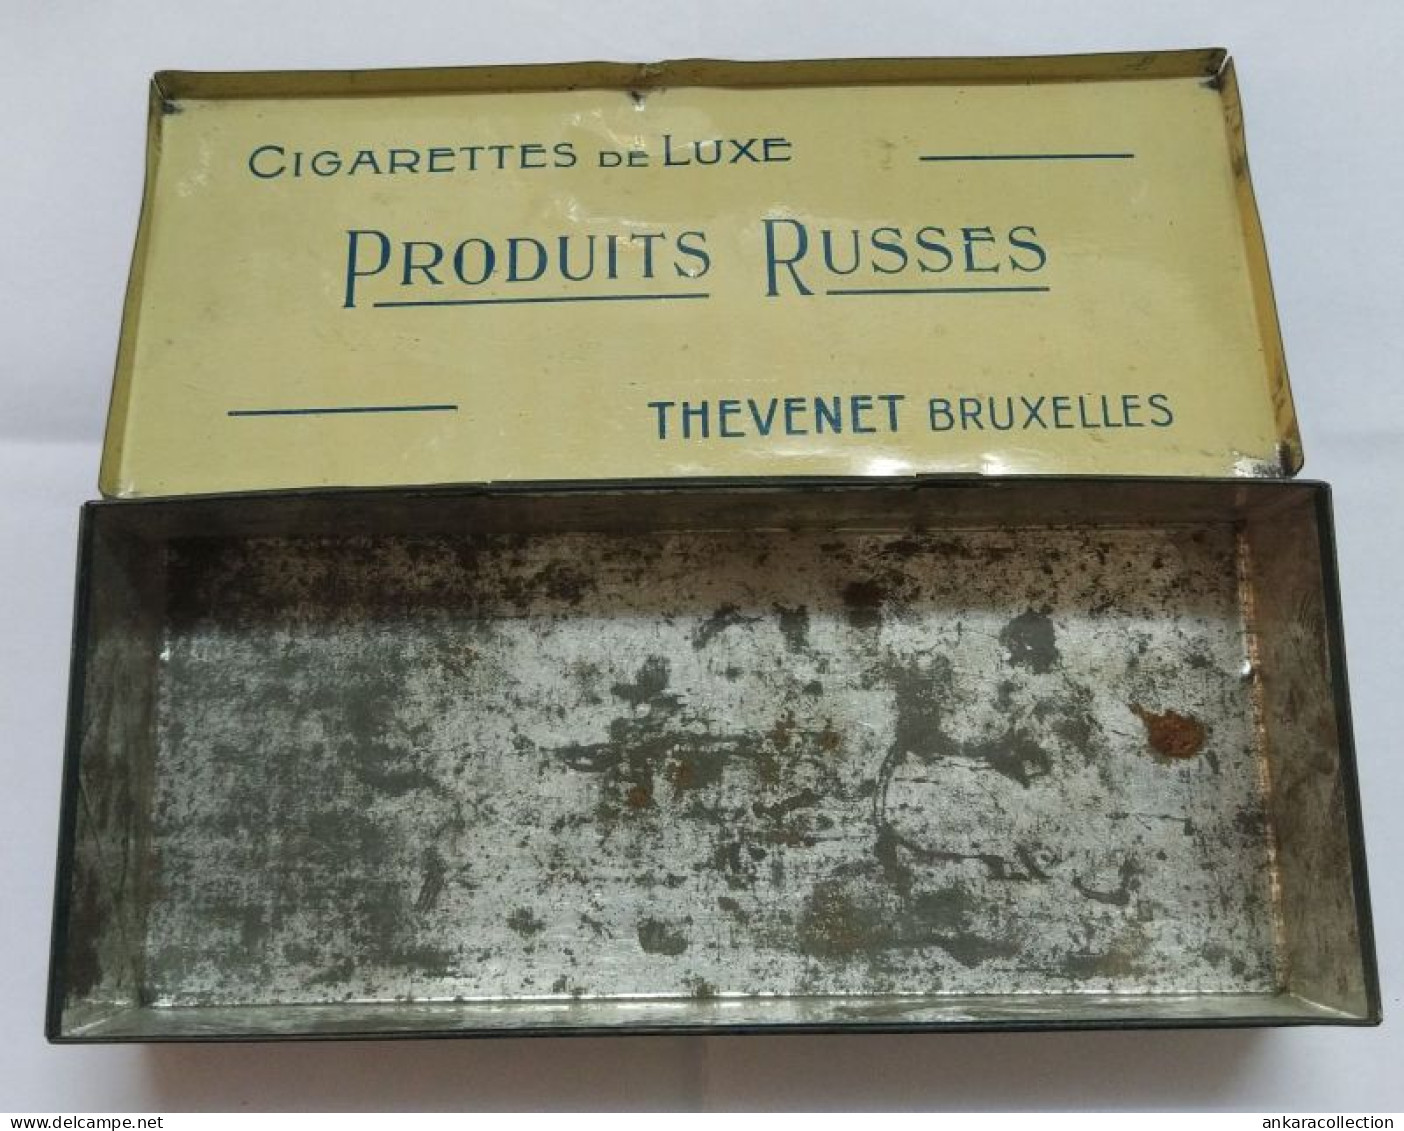 AC - PRODUITS RUSSES MANUFACTURE DE CIGARETTES ORIENTALES DE LUXE THEVENET BRUXELLES CIGARETTE - TOBACCO EMPTY VINTAGE T - Empty Tobacco Boxes